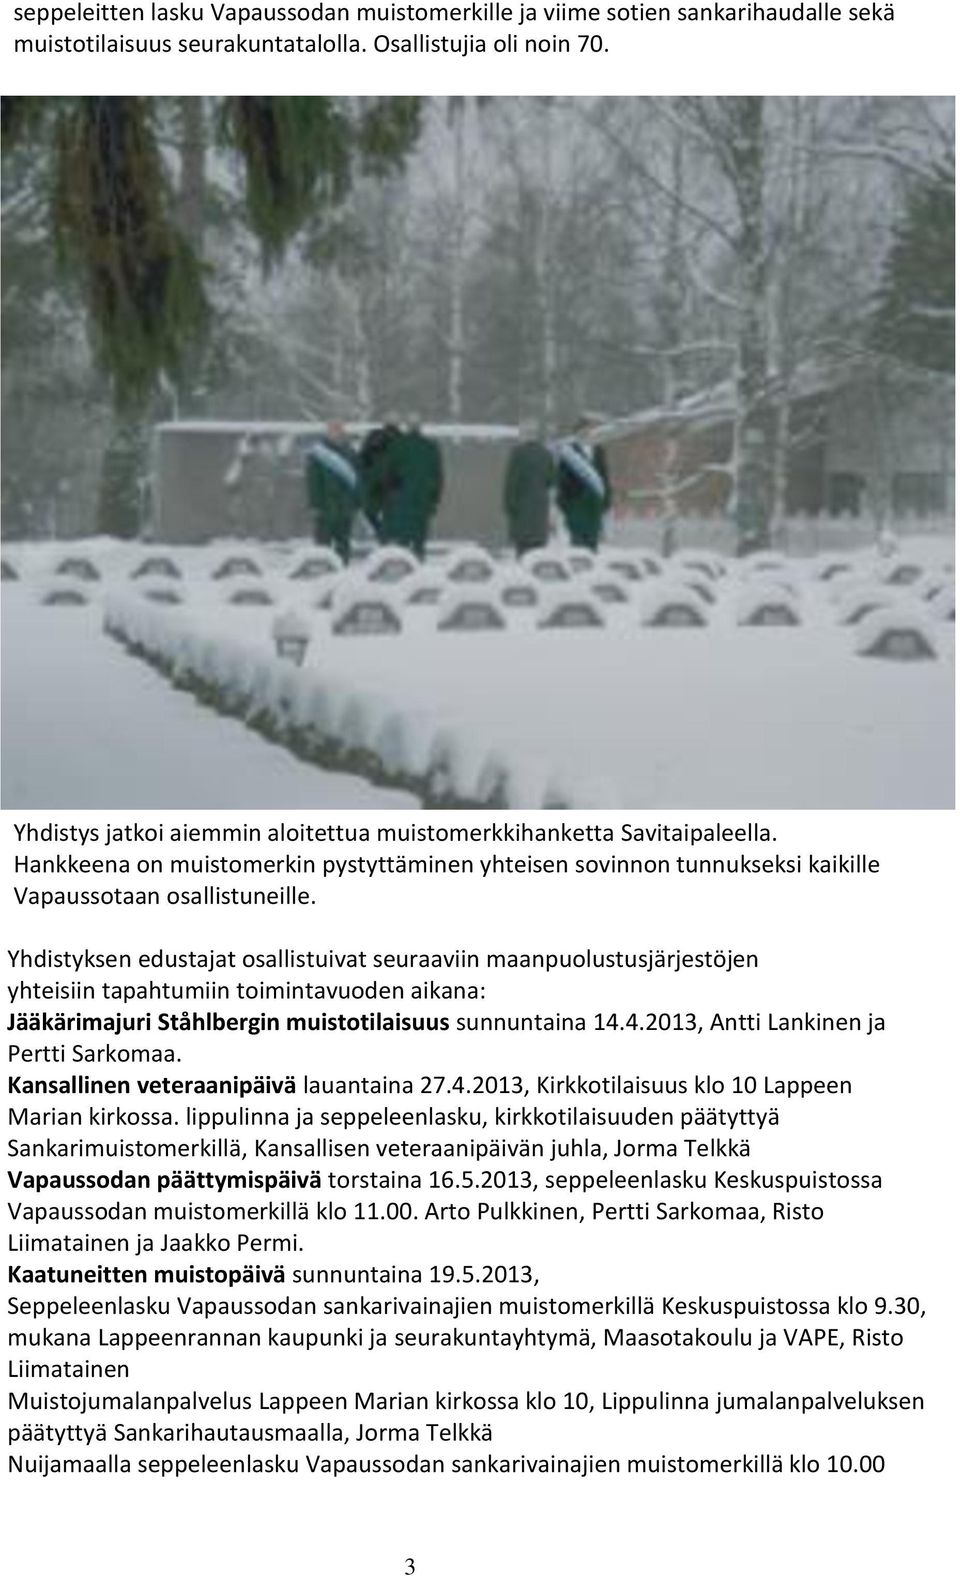 Yhdistyksen edustajat osallistuivat seuraaviin maanpuolustusjärjestöjen yhteisiin tapahtumiin toimintavuoden aikana: Jääkärimajuri Ståhlbergin muistotilaisuus sunnuntaina 14.